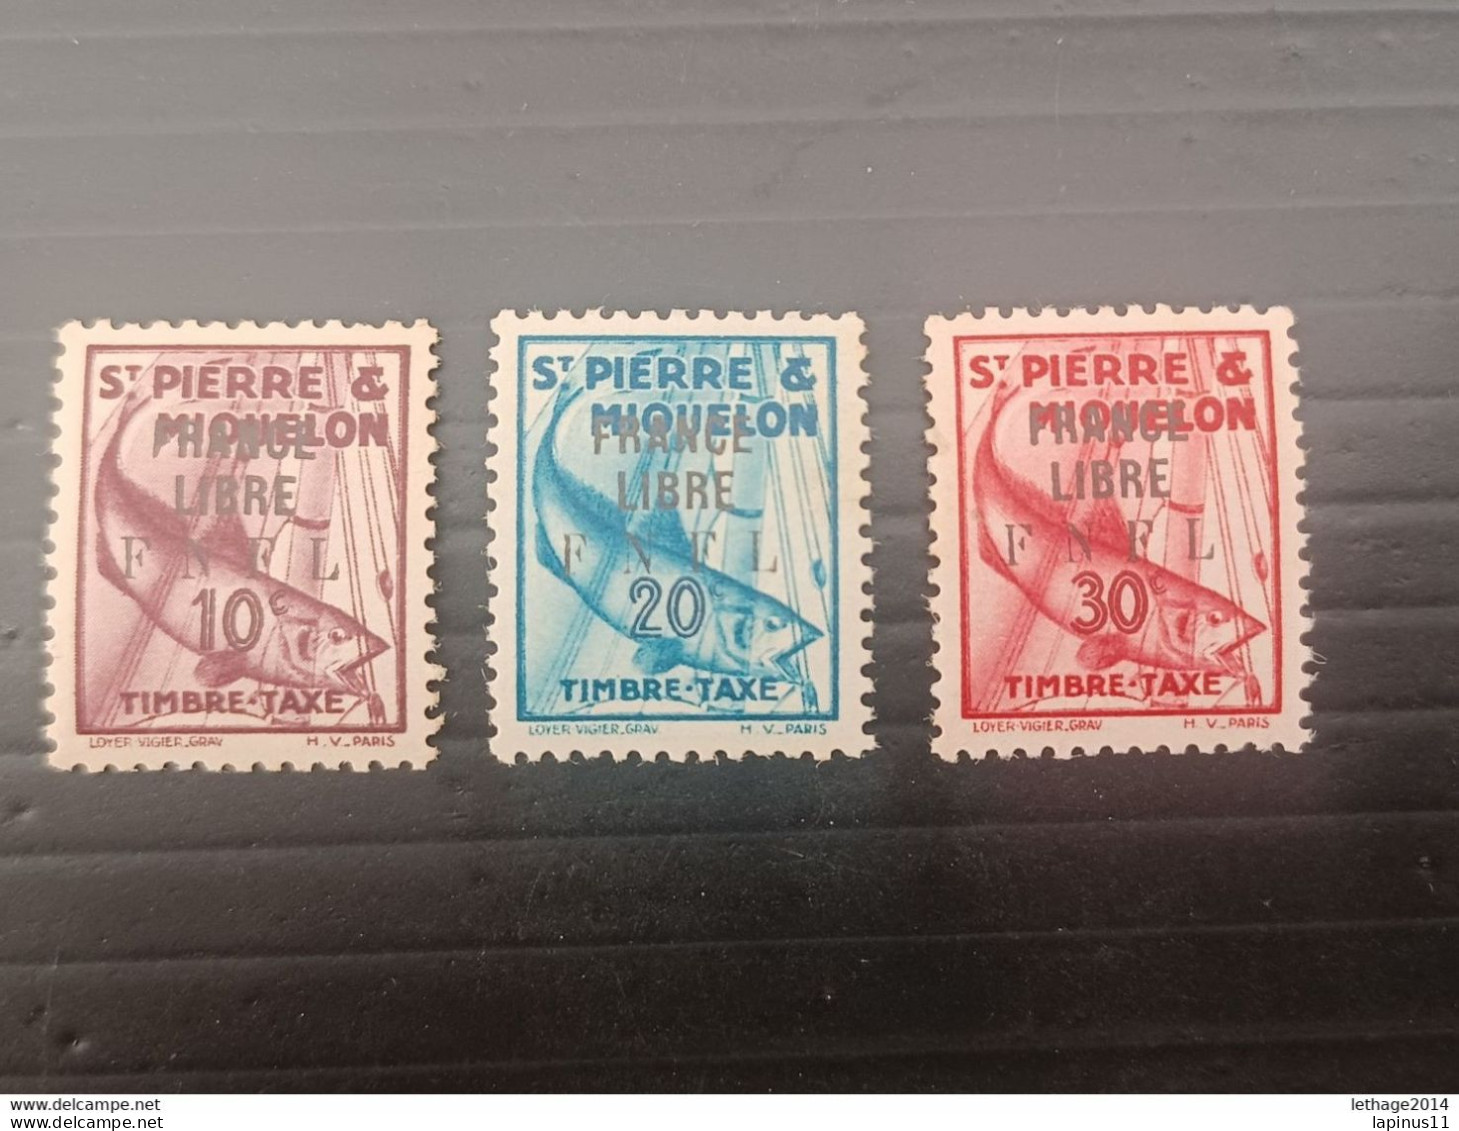 ST PIERRE ET MIQUELLON 1942 TAXE OVERPRINT FRANCE LIBRE F N F L CAT. YVERT N. 58-60-61 MNH - Unused Stamps